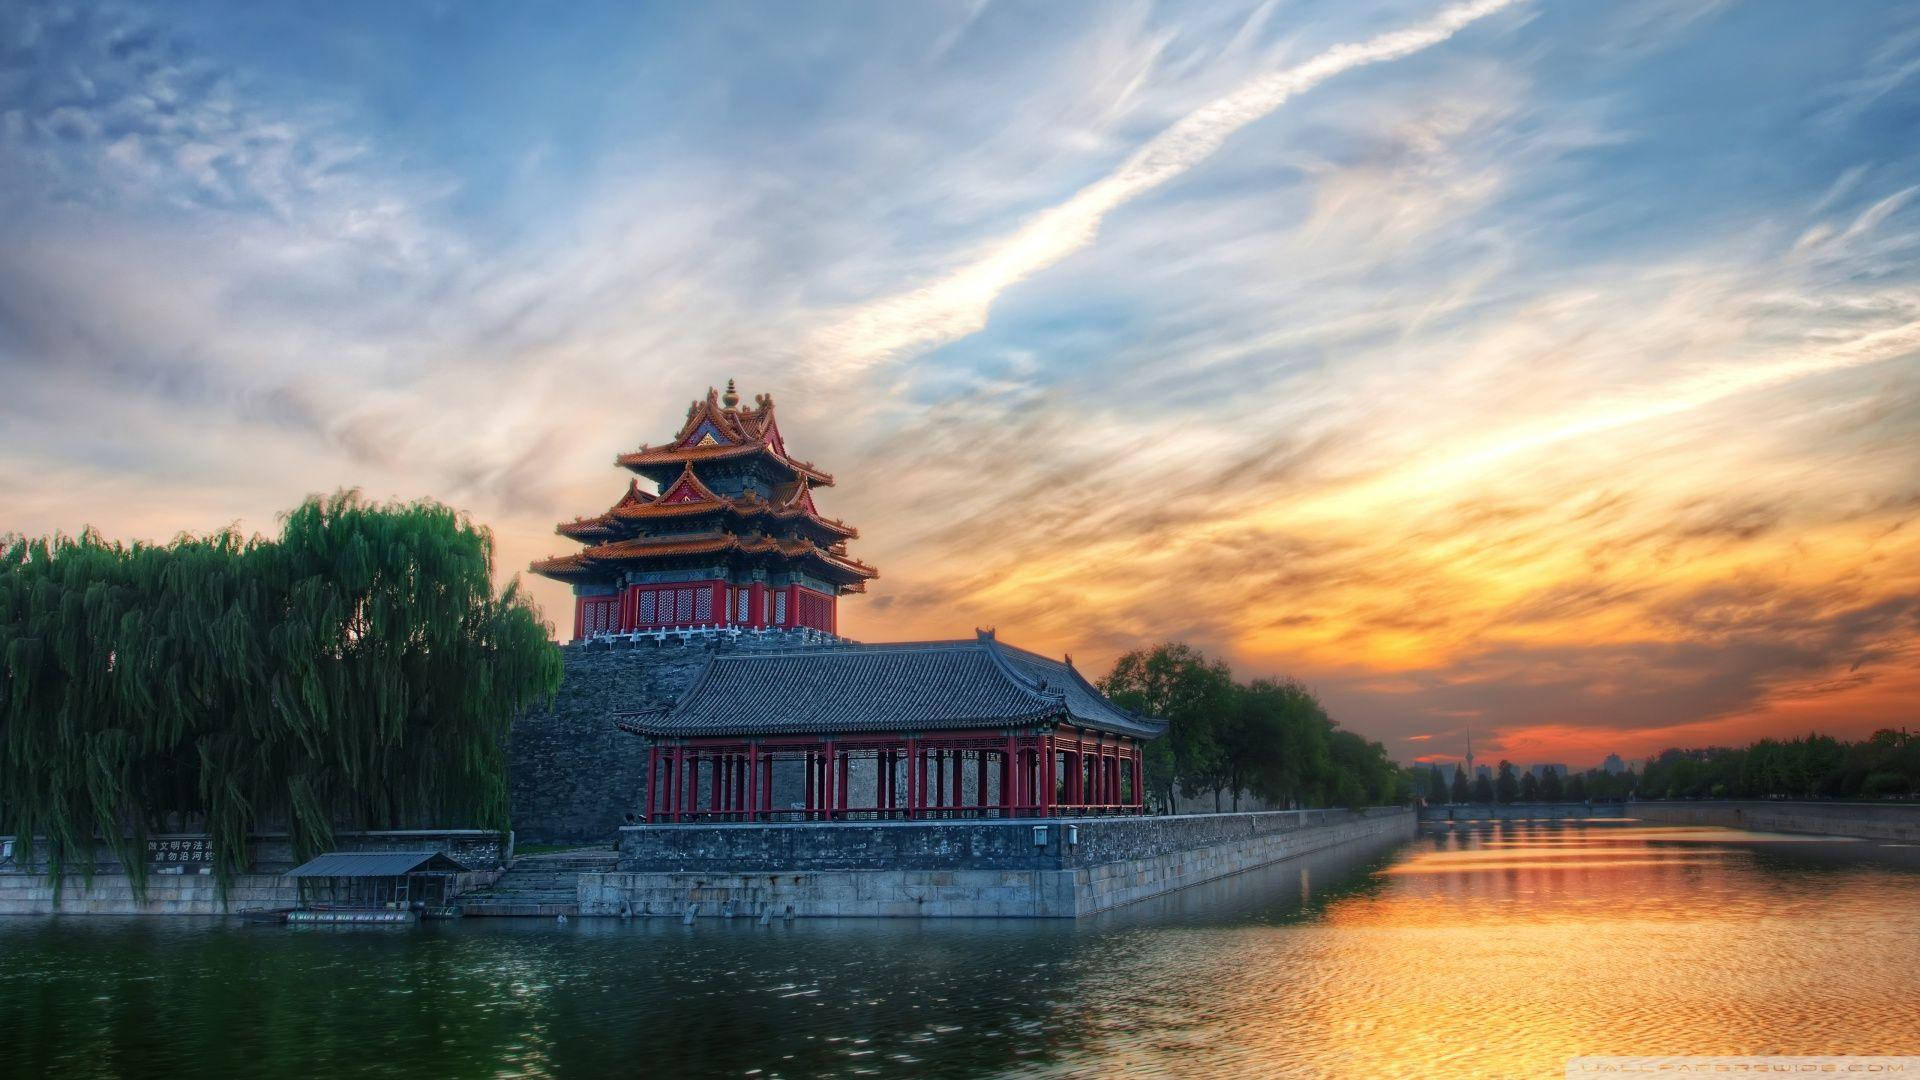 Beijing Forbidden City In Sunset